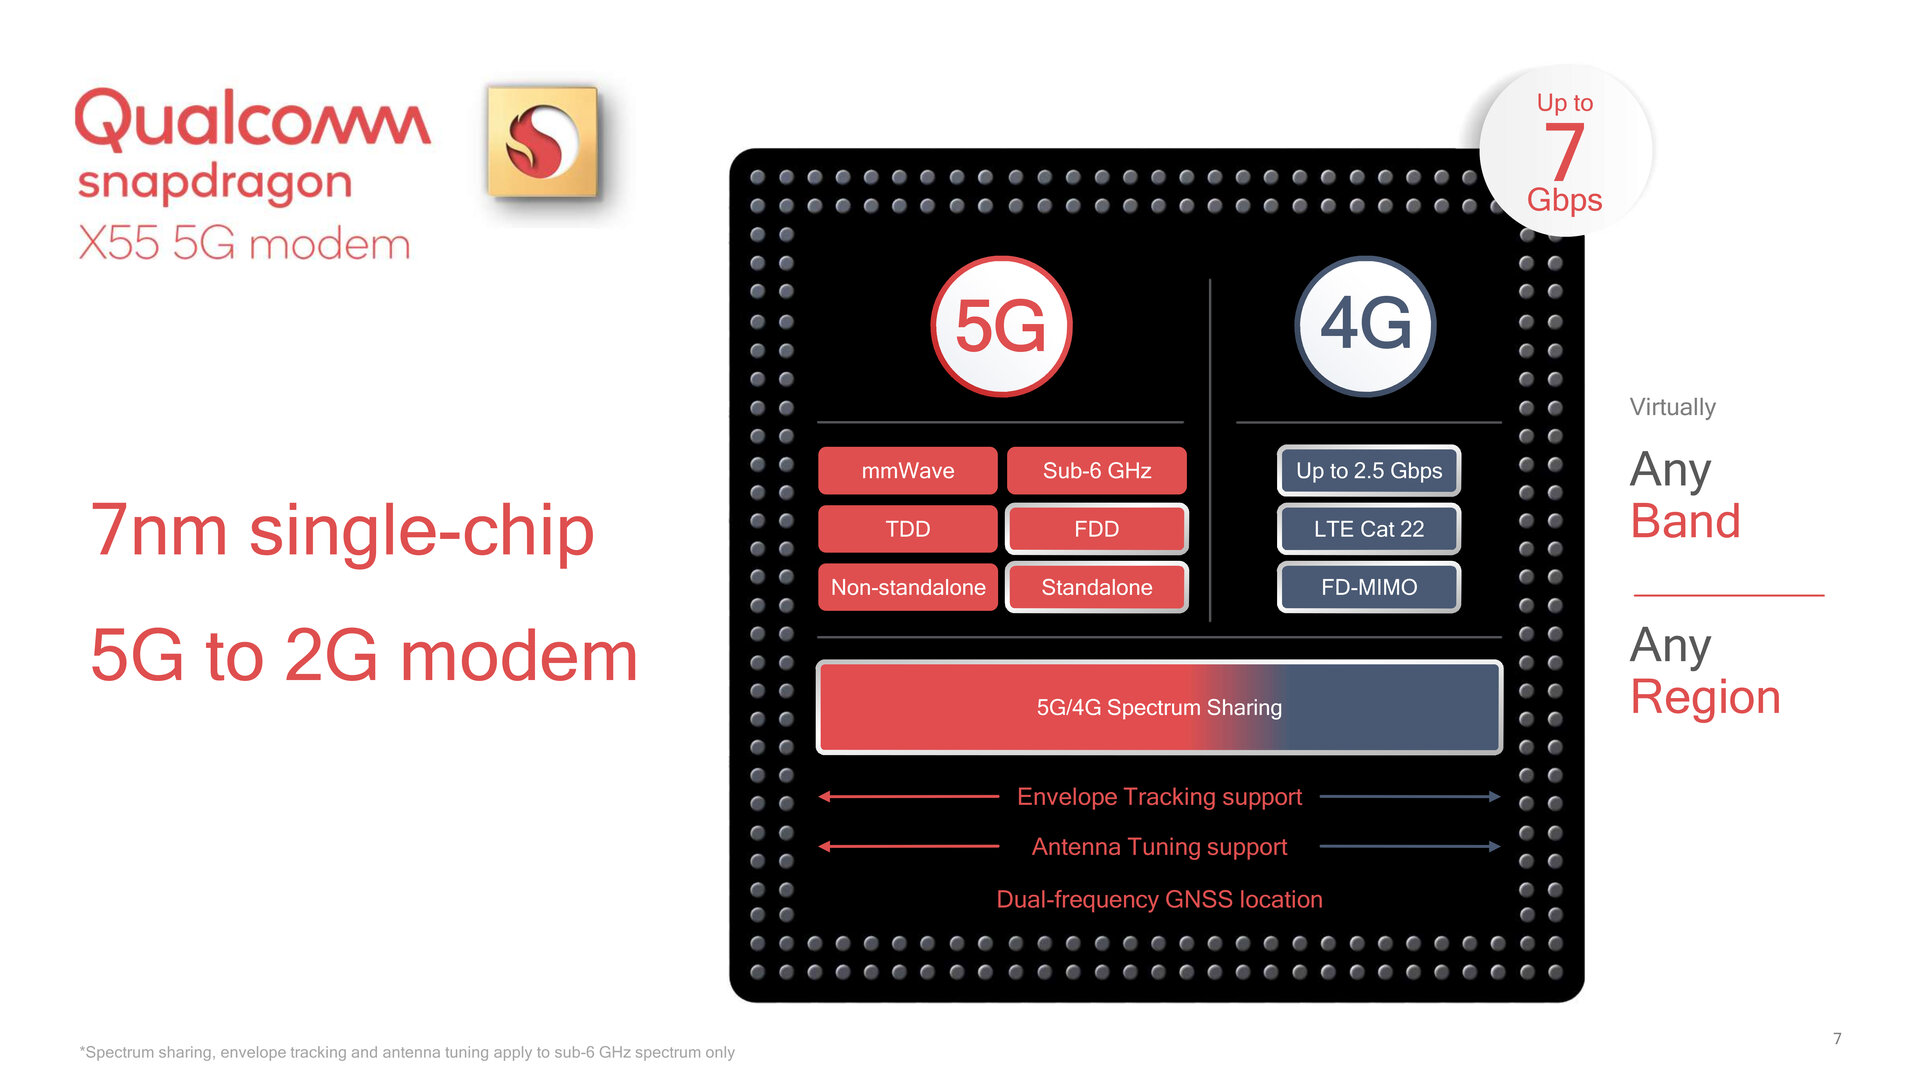 Snapdragon X55 med stöd för 5G, LTE, 3G och 2G